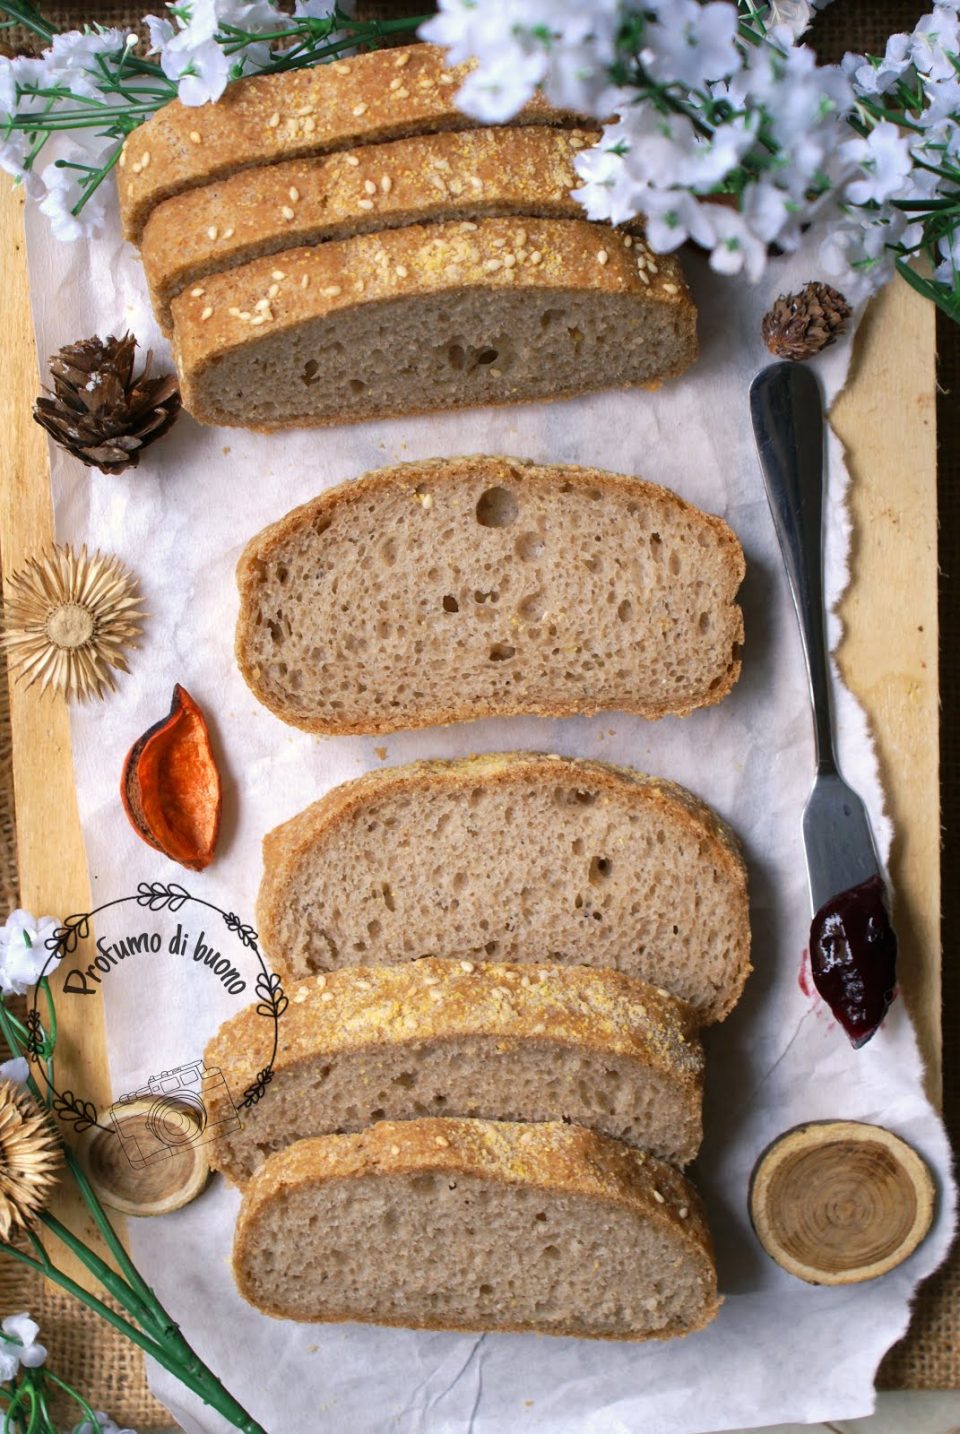 Impastatrice per pane: prepara fragranti pagnotte a casa tua